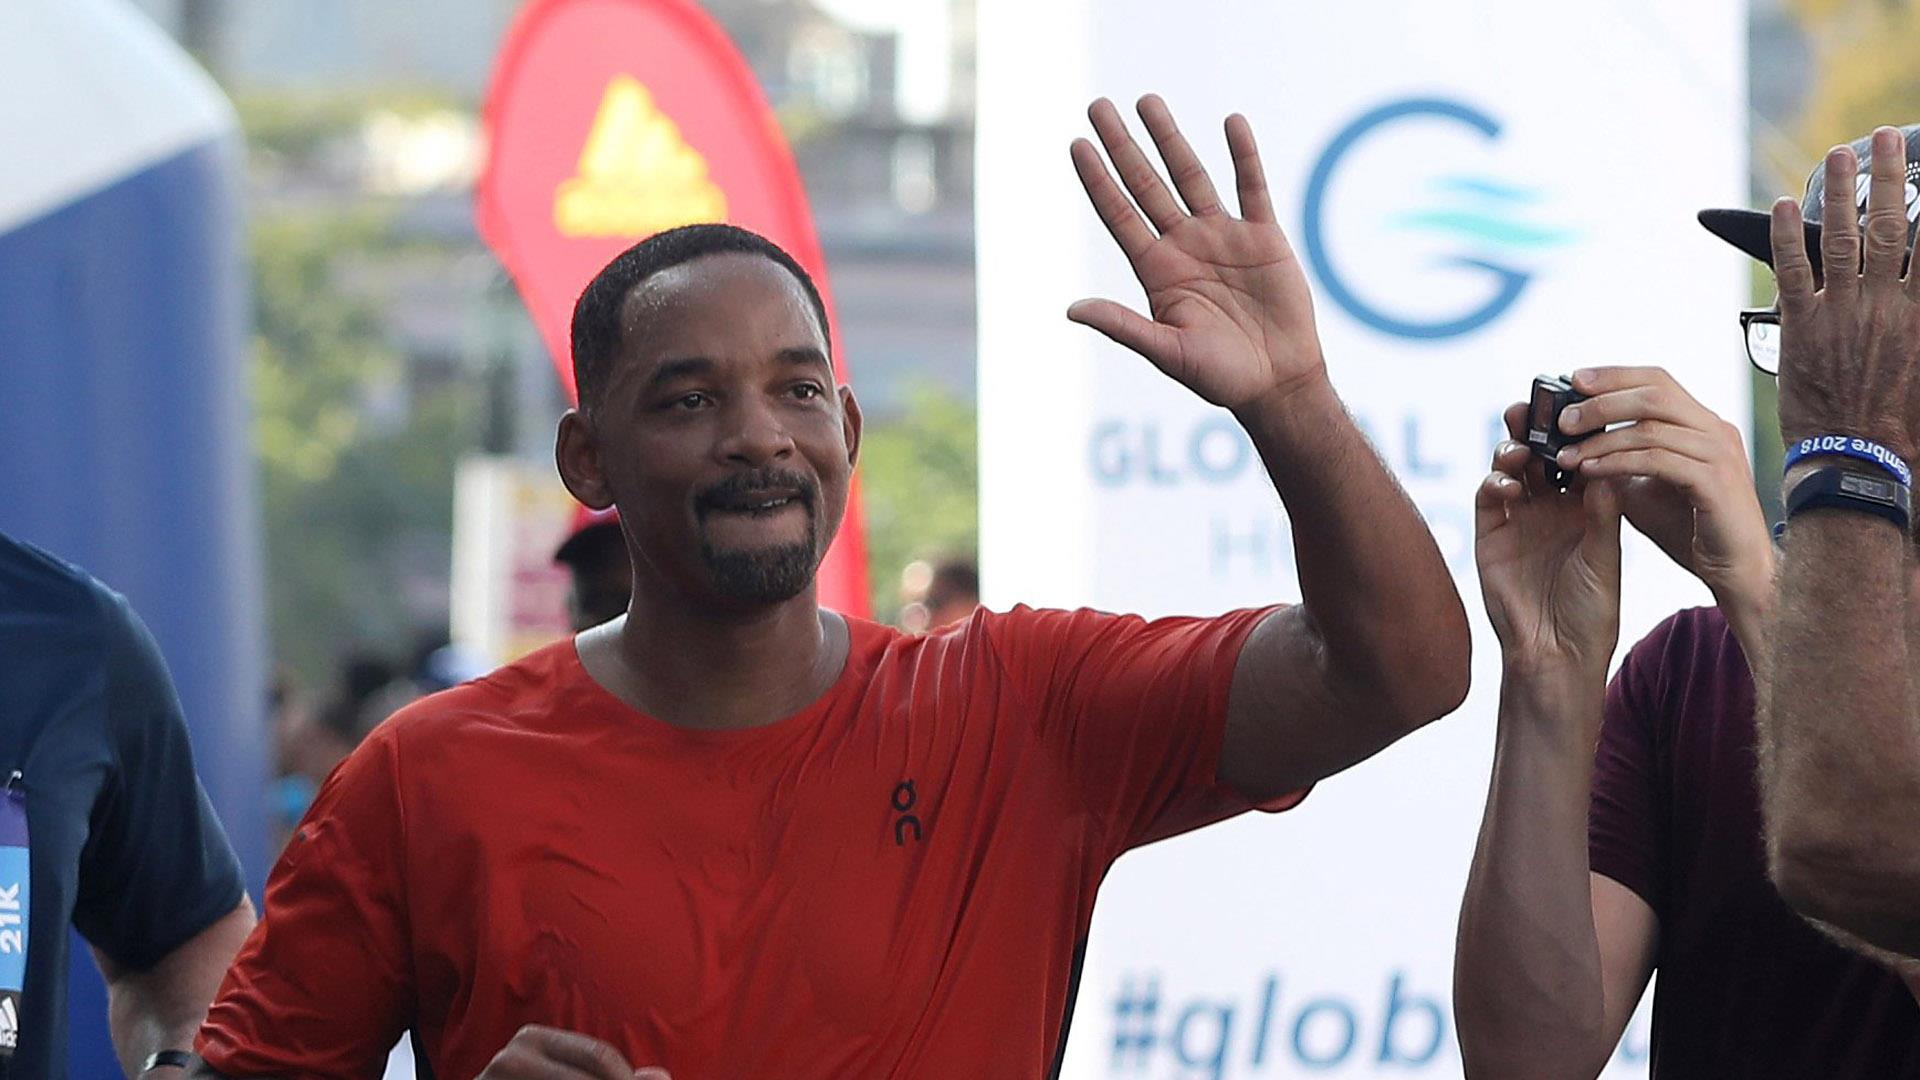 ÙØªÙØ¬Ø© Ø¨Ø­Ø« Ø§ÙØµÙØ± Ø¹Ù âªWill Smith run half Marathon in Havana Cubaâ¬â